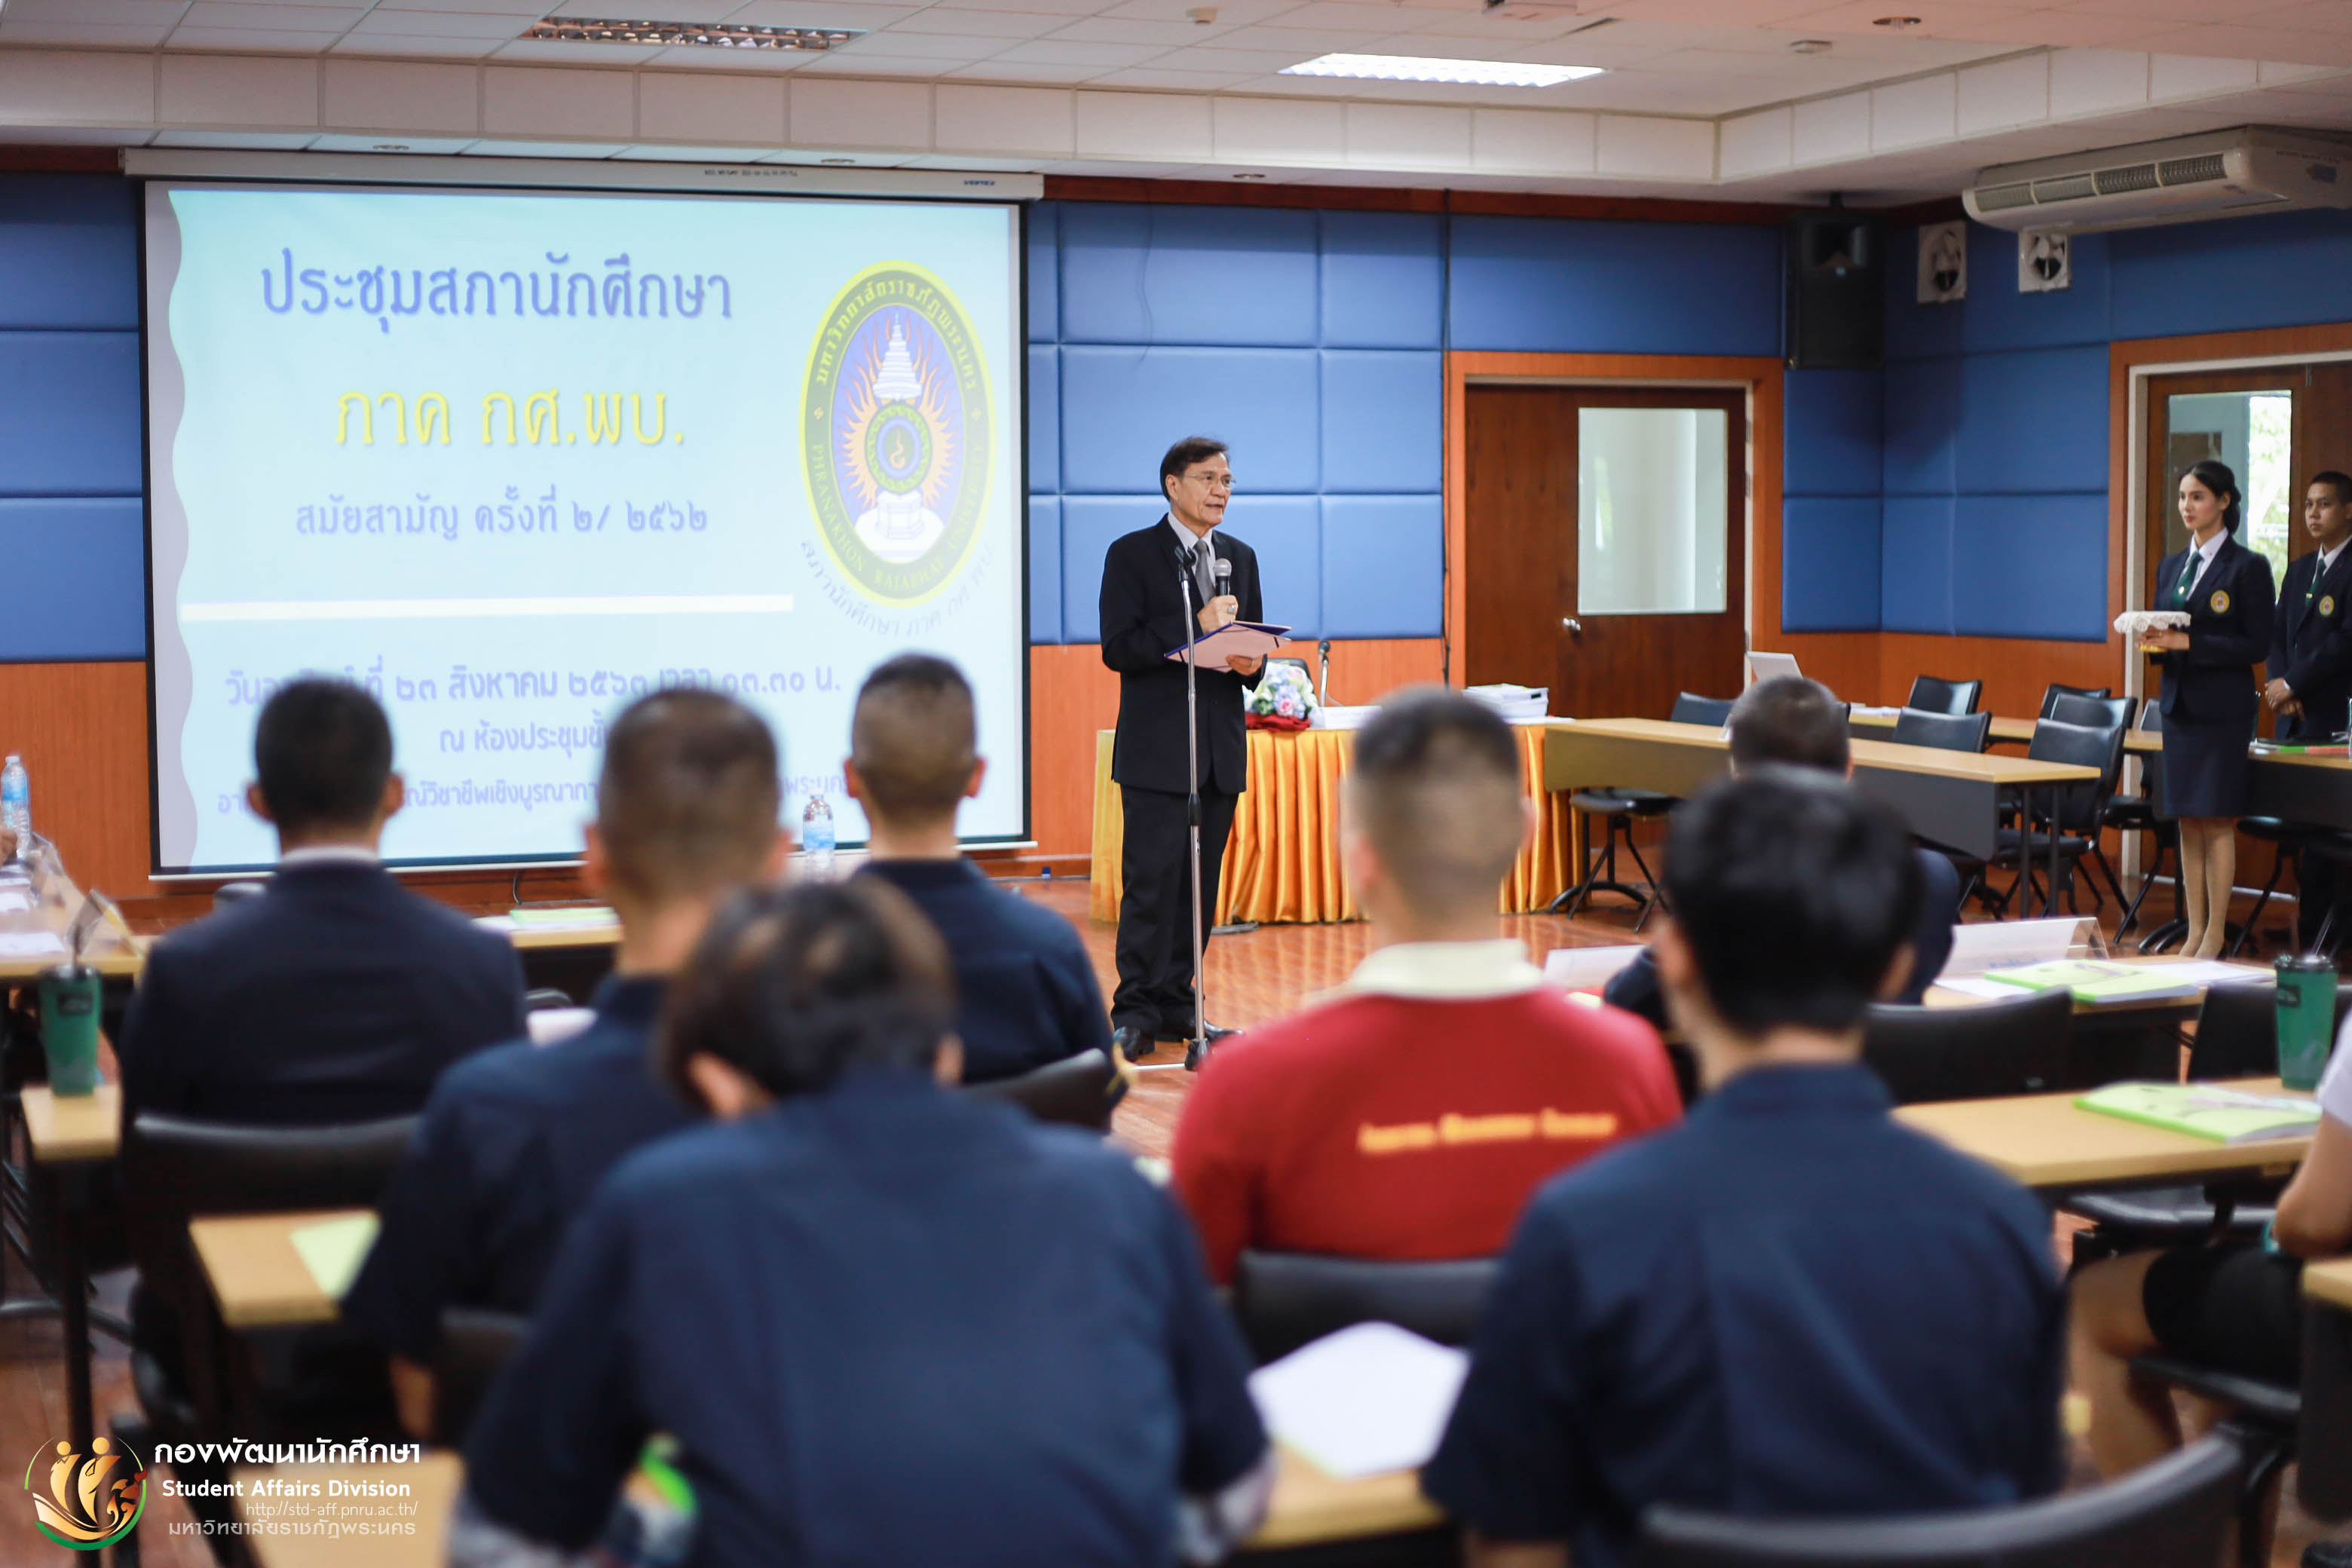 23 สิงหาคม 2563 การประชุมสภานักศึกษา ภาค กศ.พบ.สมัยสามัญ ครั้งที่ 2/62 ณ ห้องประชุมใหญ่ ชั้น 3 อาคารฝึกประสบการณ์วิชาชีพเชิงบูรณาการ